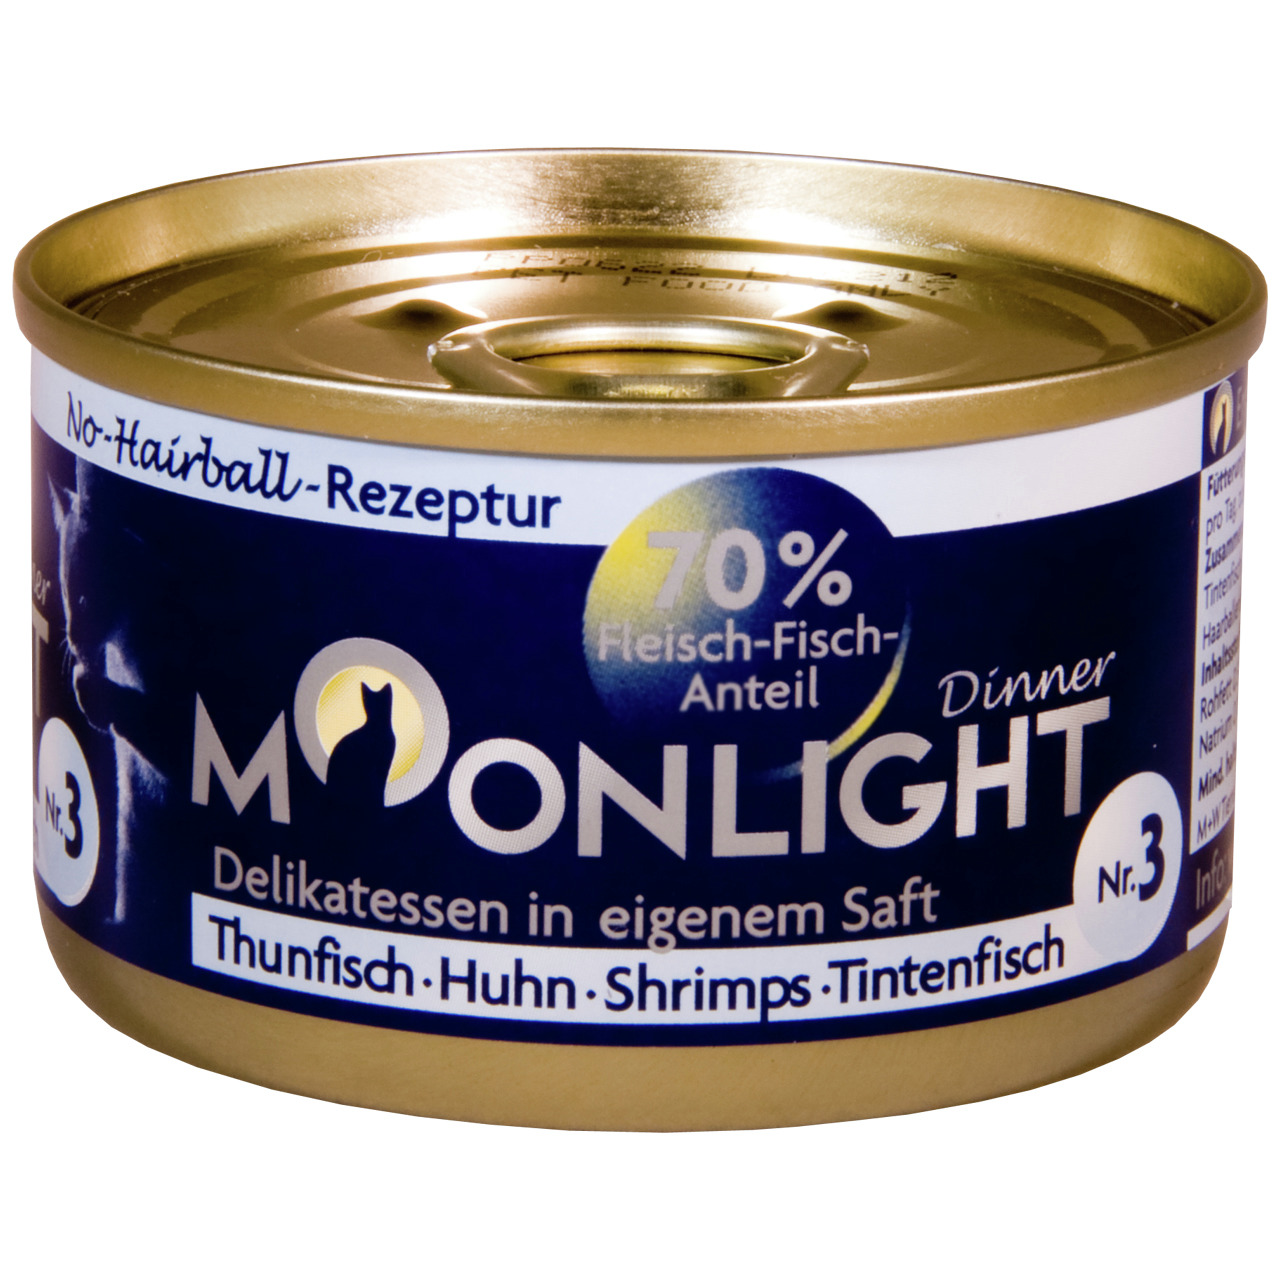 Sparpaket 48 x 80 g Moonlight Dinner Nr. 3 Thunfisch, Huhn, Shrimps und Tintenfisch in eigenem Saft Katzen Nassfutter